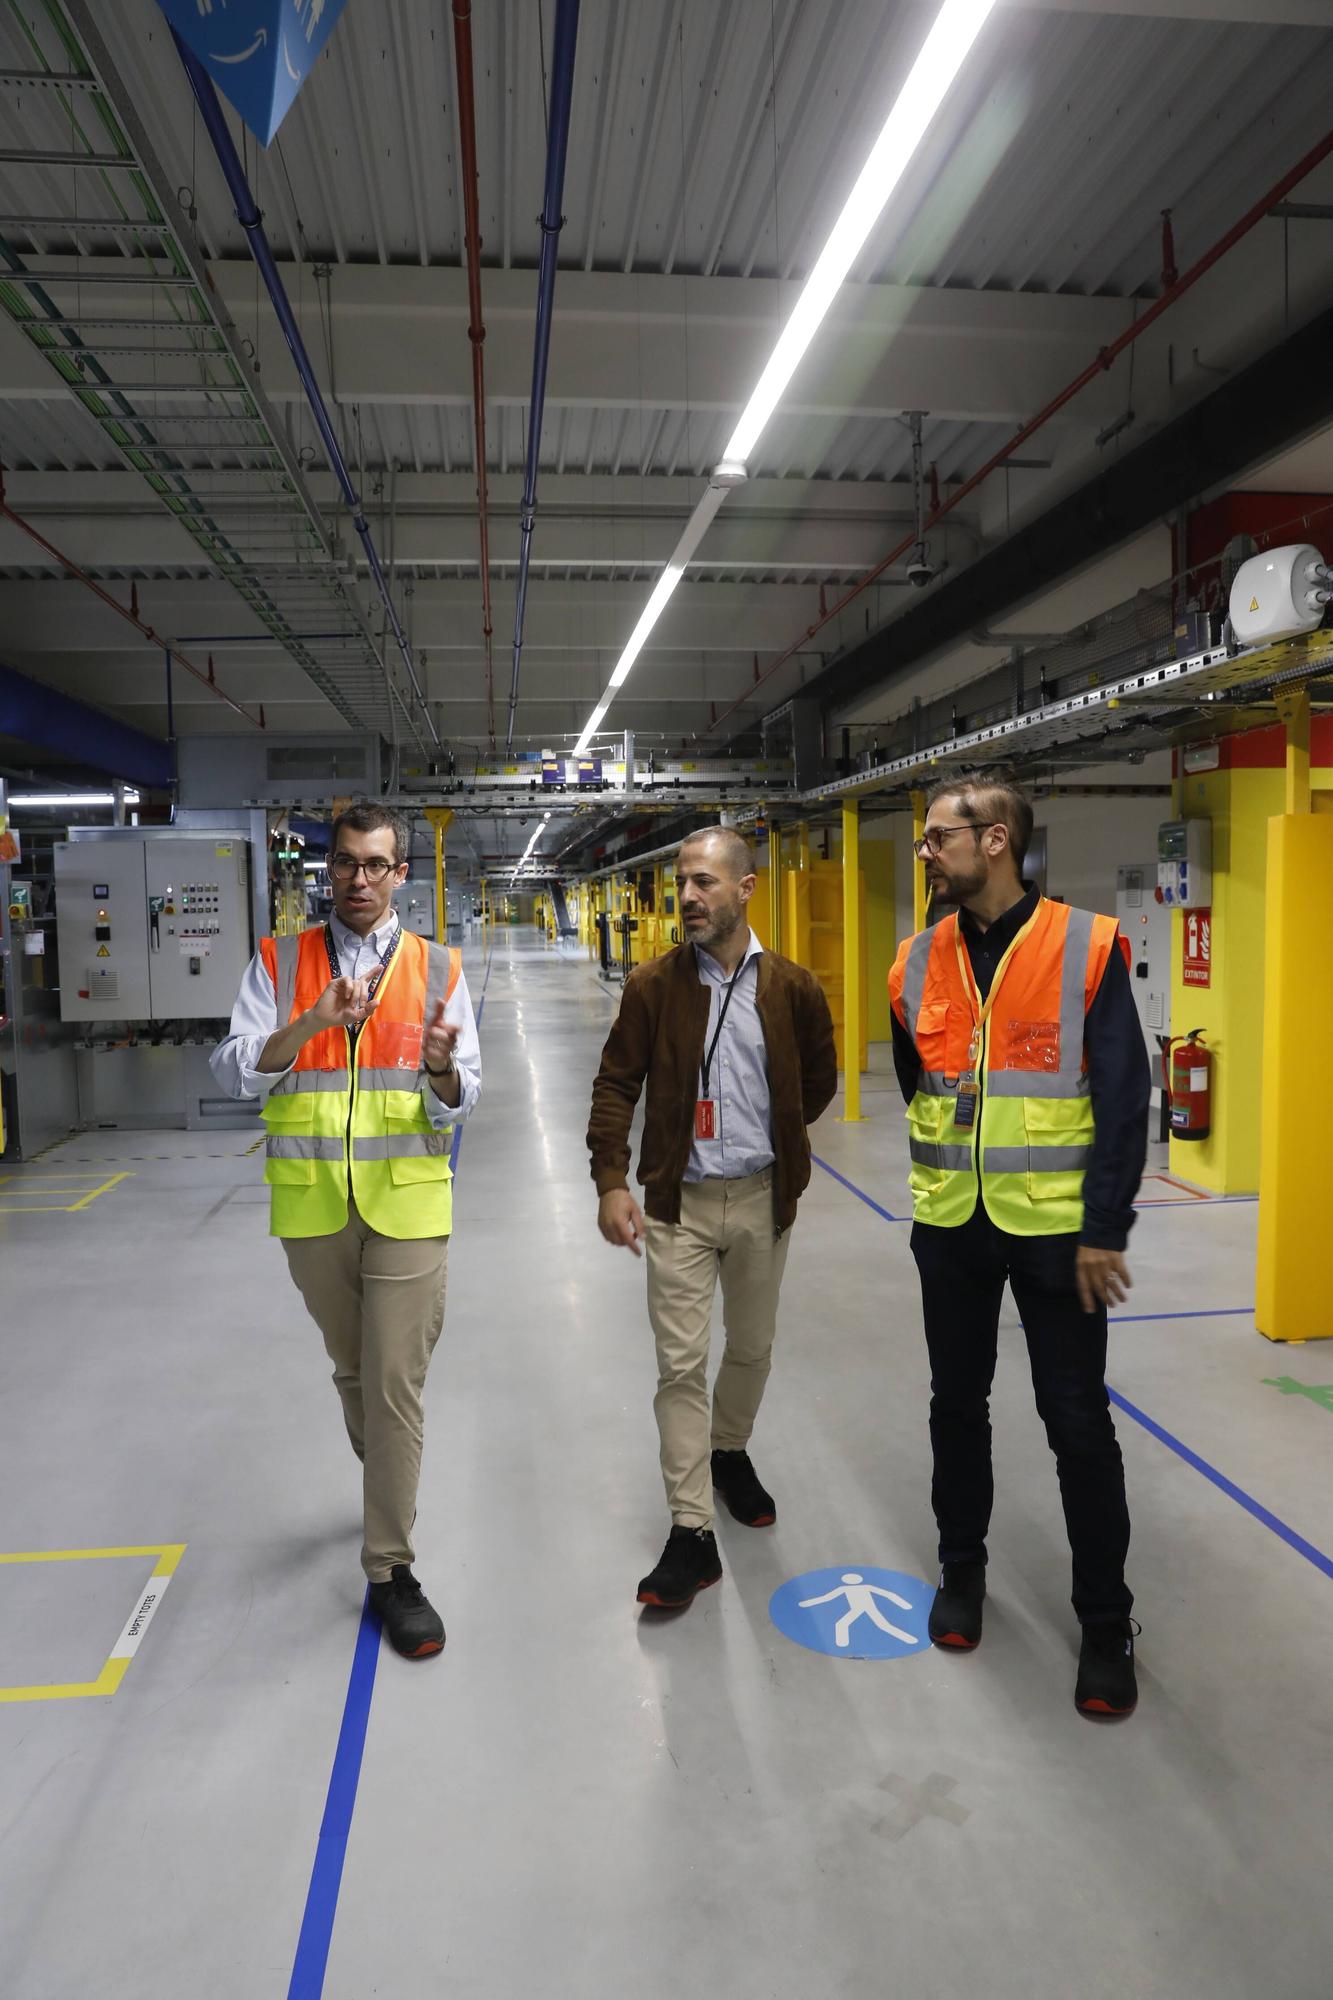 EN IMÁGENES: así es el gran centro logístico robotizado que Amazon abrirá en Bobes (Siero) el 2 de septiembre